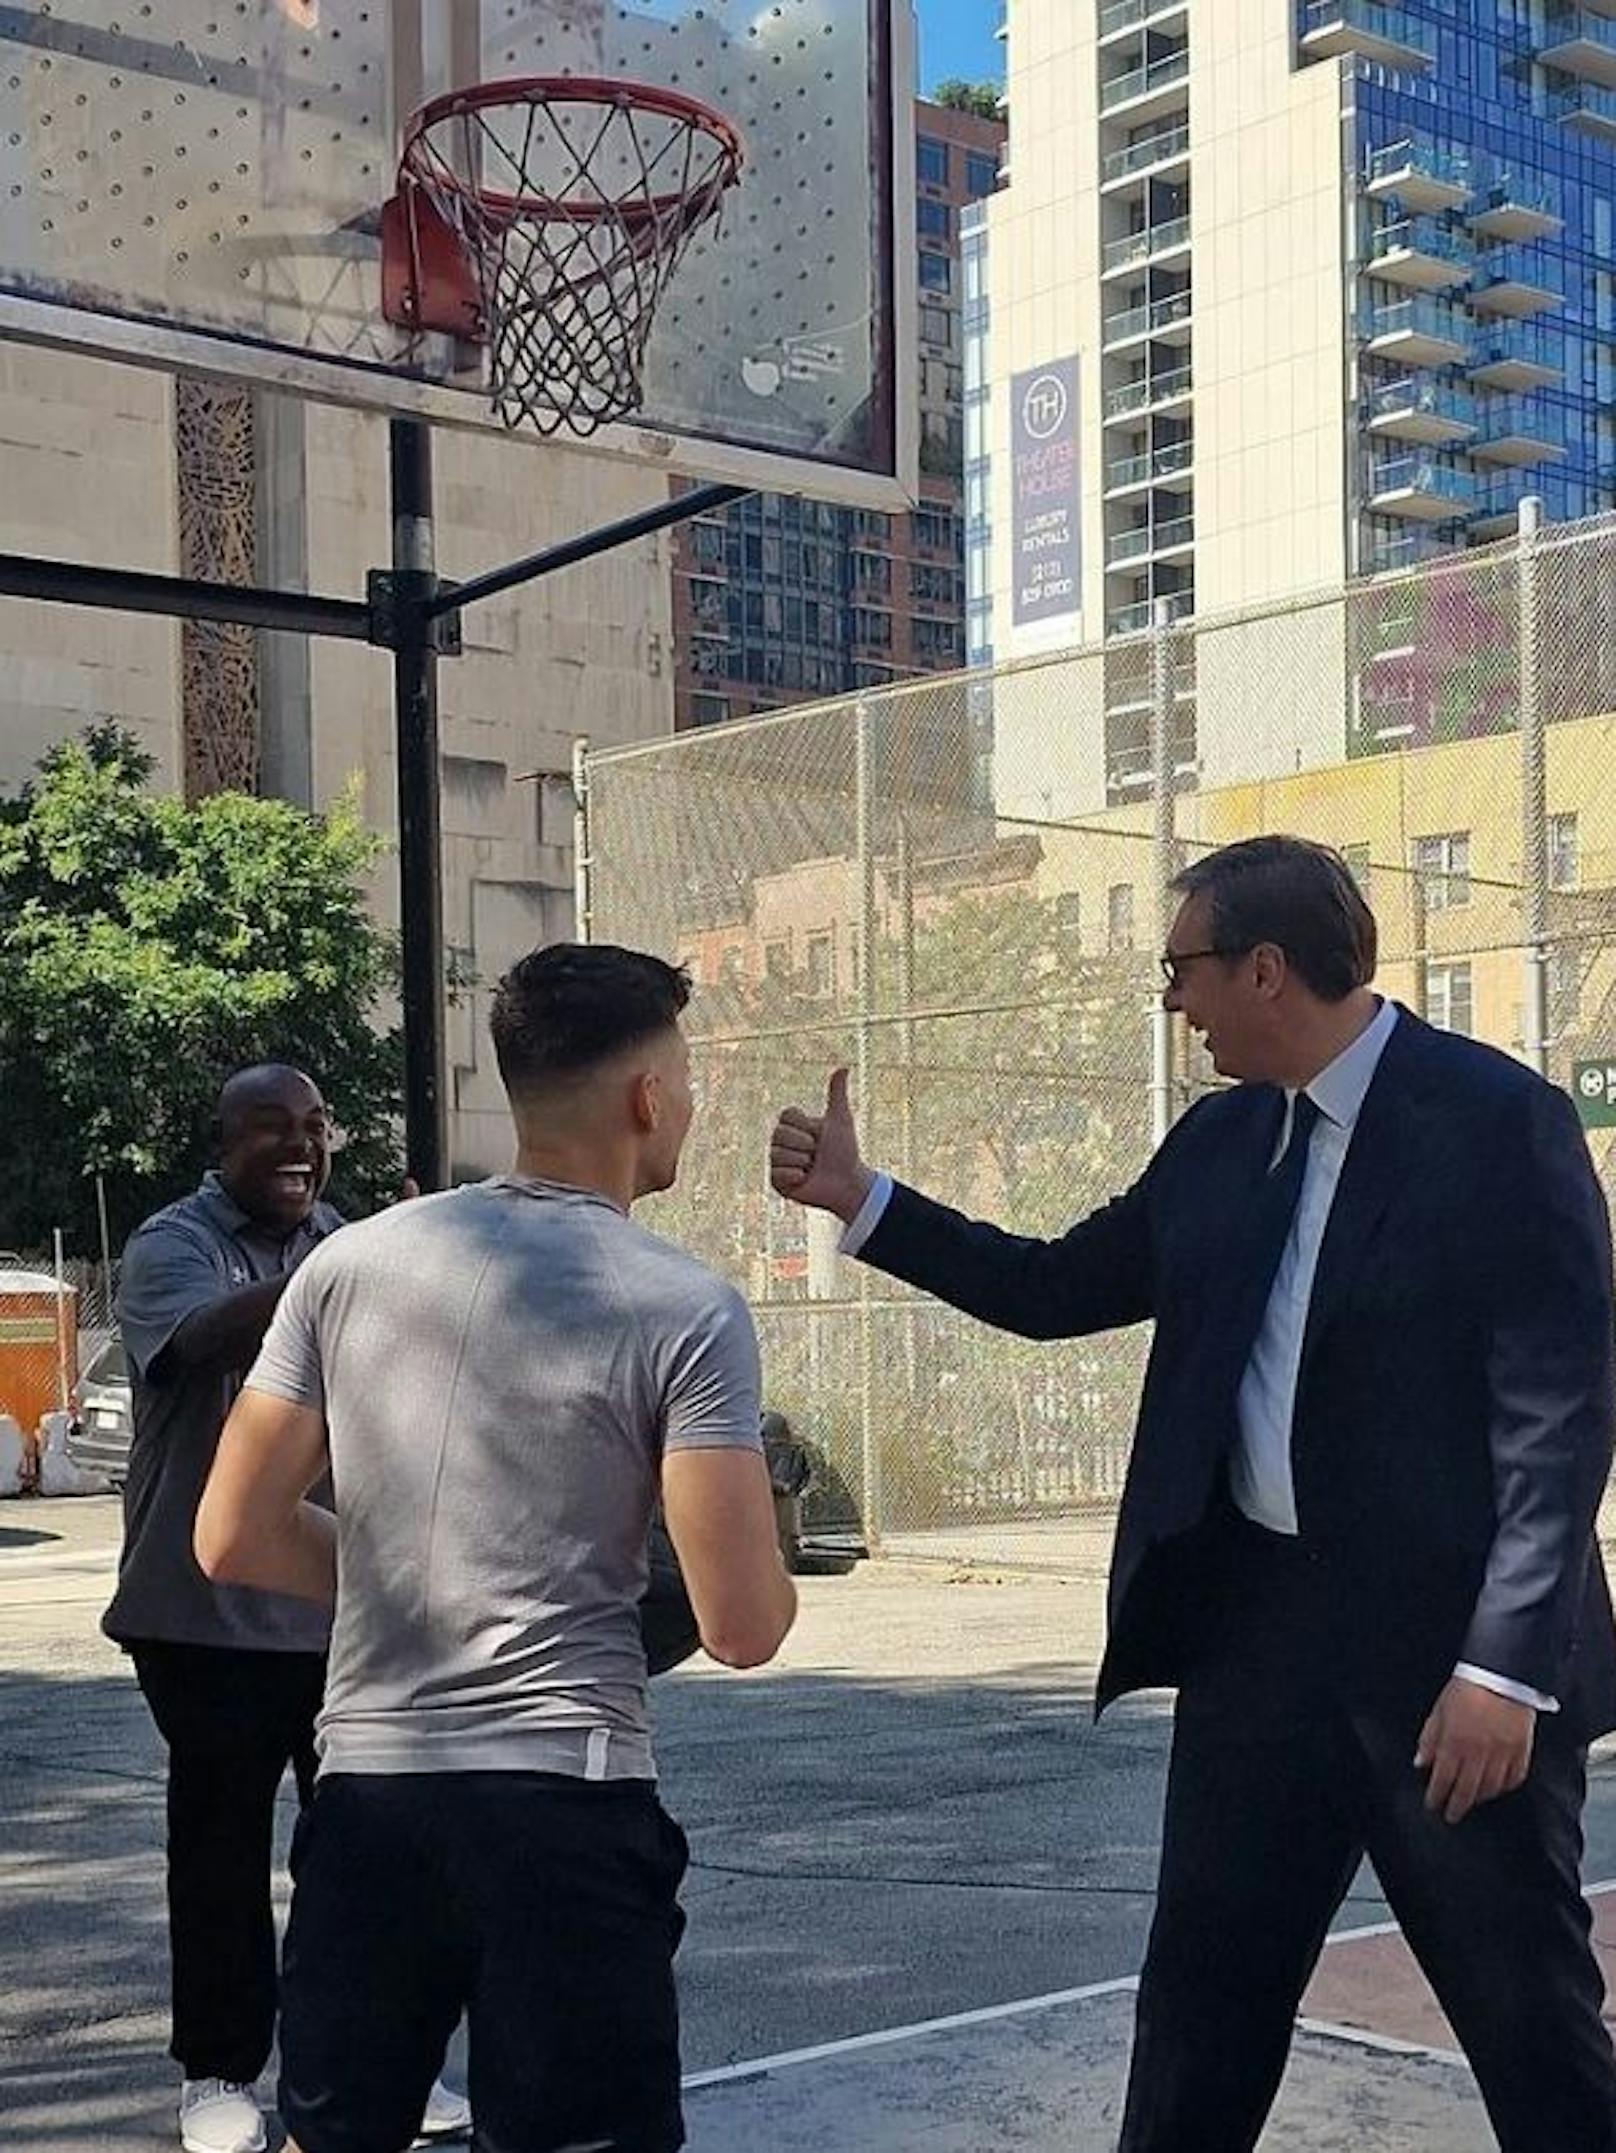 Bei der UN-Generalversammlung in NYC vertrat sich der Serbien-Präsident die Beine am Basketball-Court.